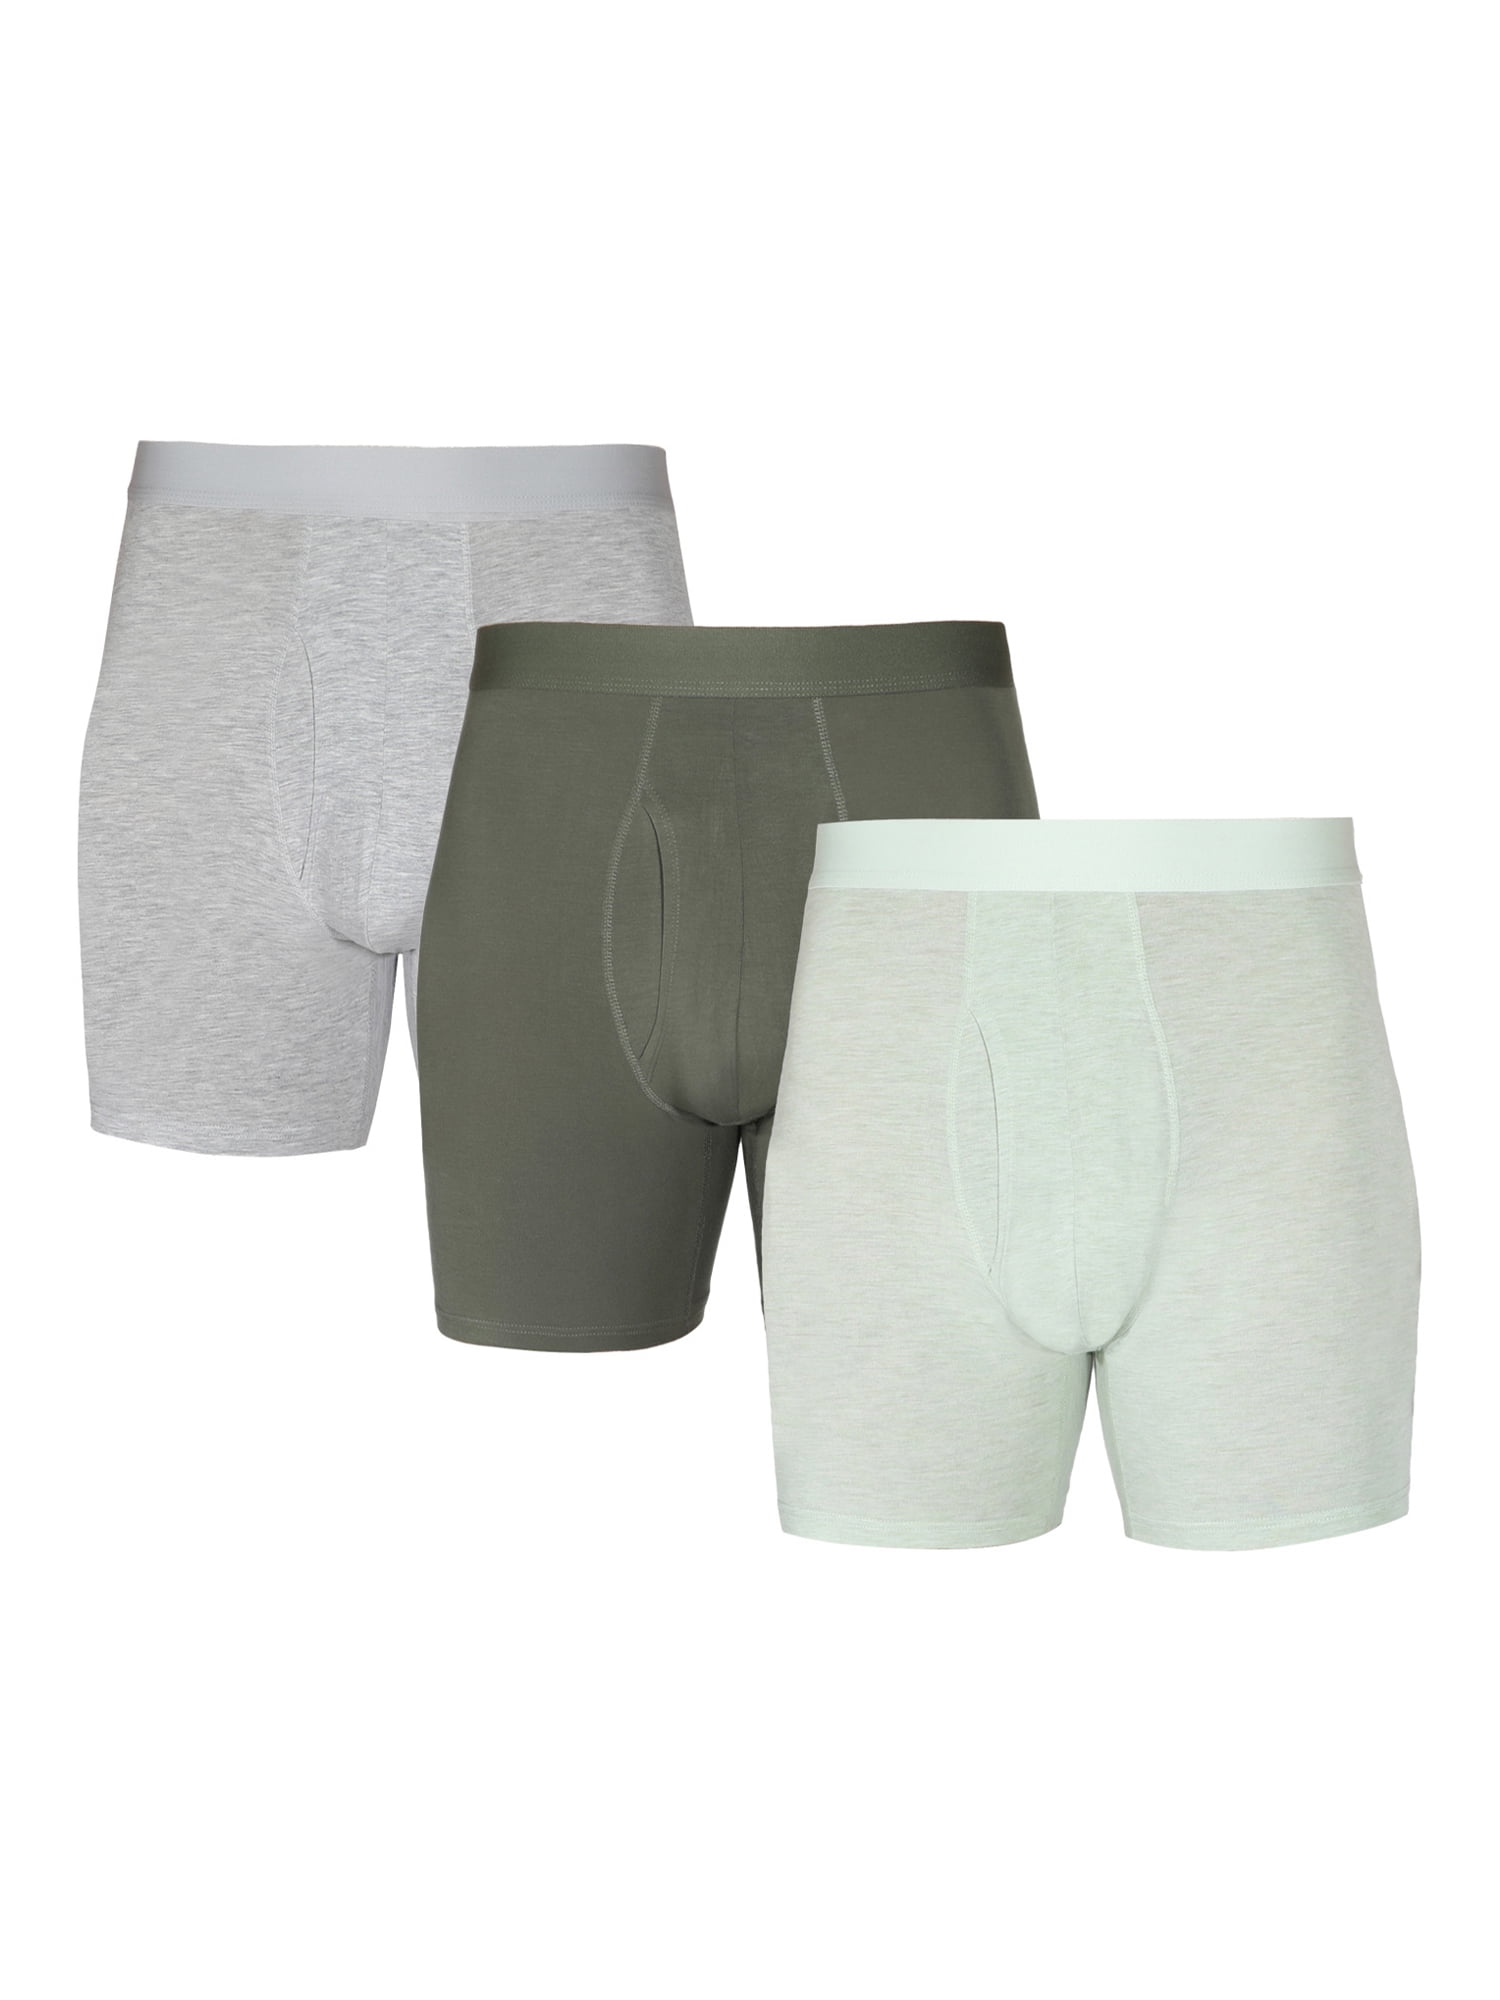 Men's Ultra Boxer Brief (3 Pack), Saxx Underwear